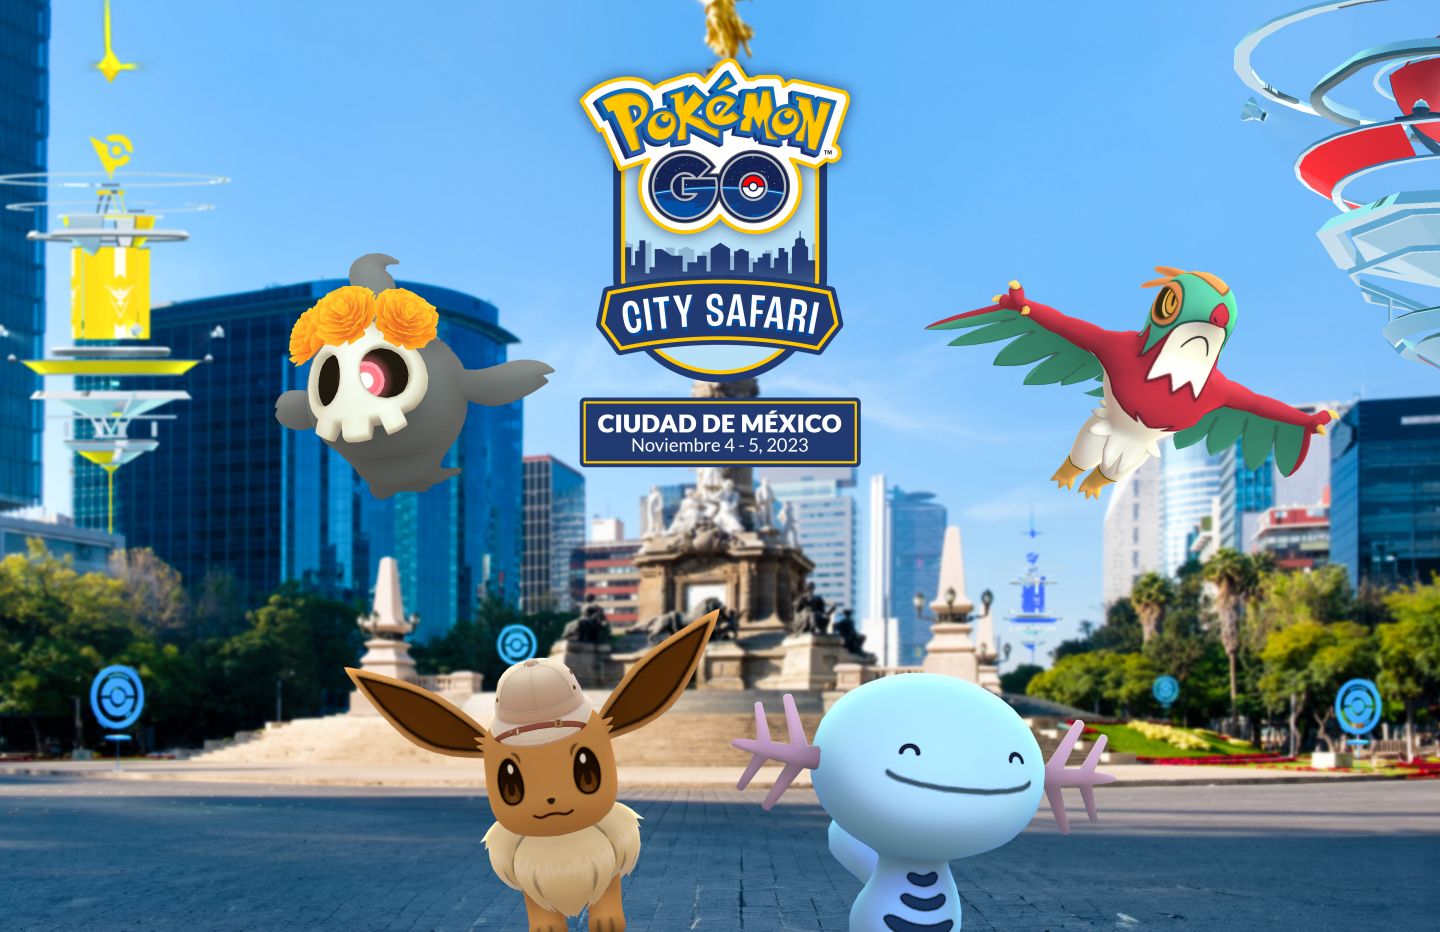 Pokémon GO anuncia City Safari en la Ciudad de México